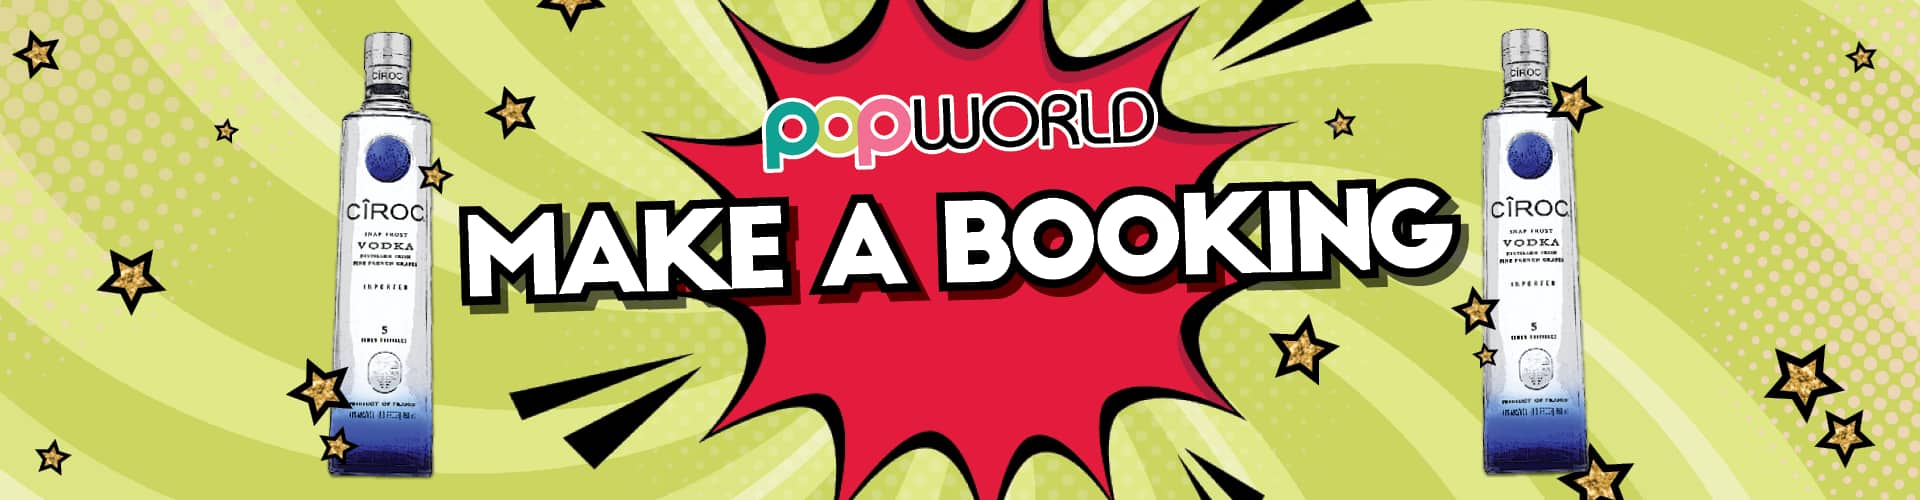 Make a Booking at Popworld Sheffield